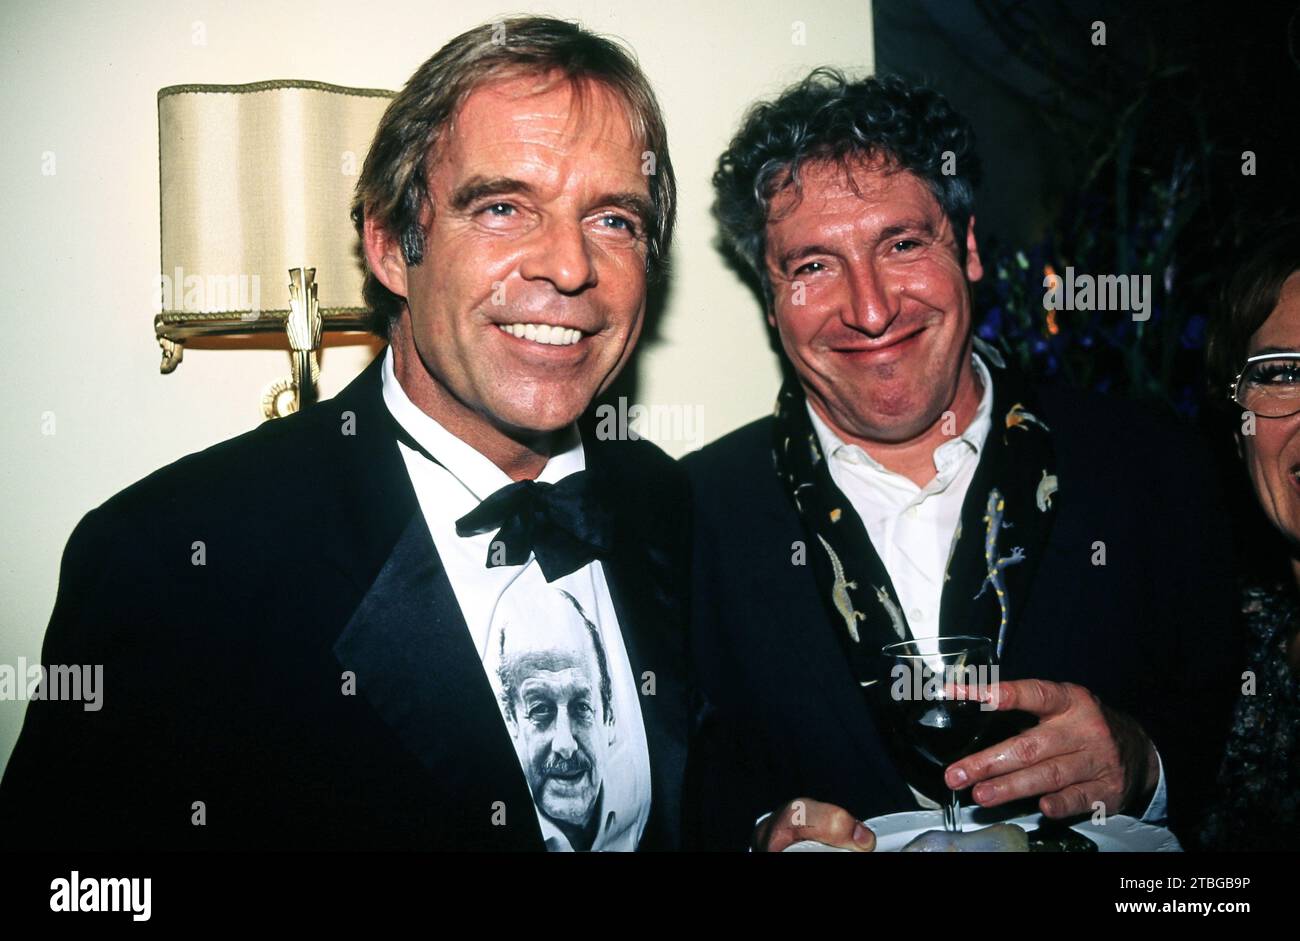 Thomas Fritsch und Volker Brandt, deutsche Schauspieler, bei einer Abendveranstaltung, Deutschland um 1993. Stock Photo